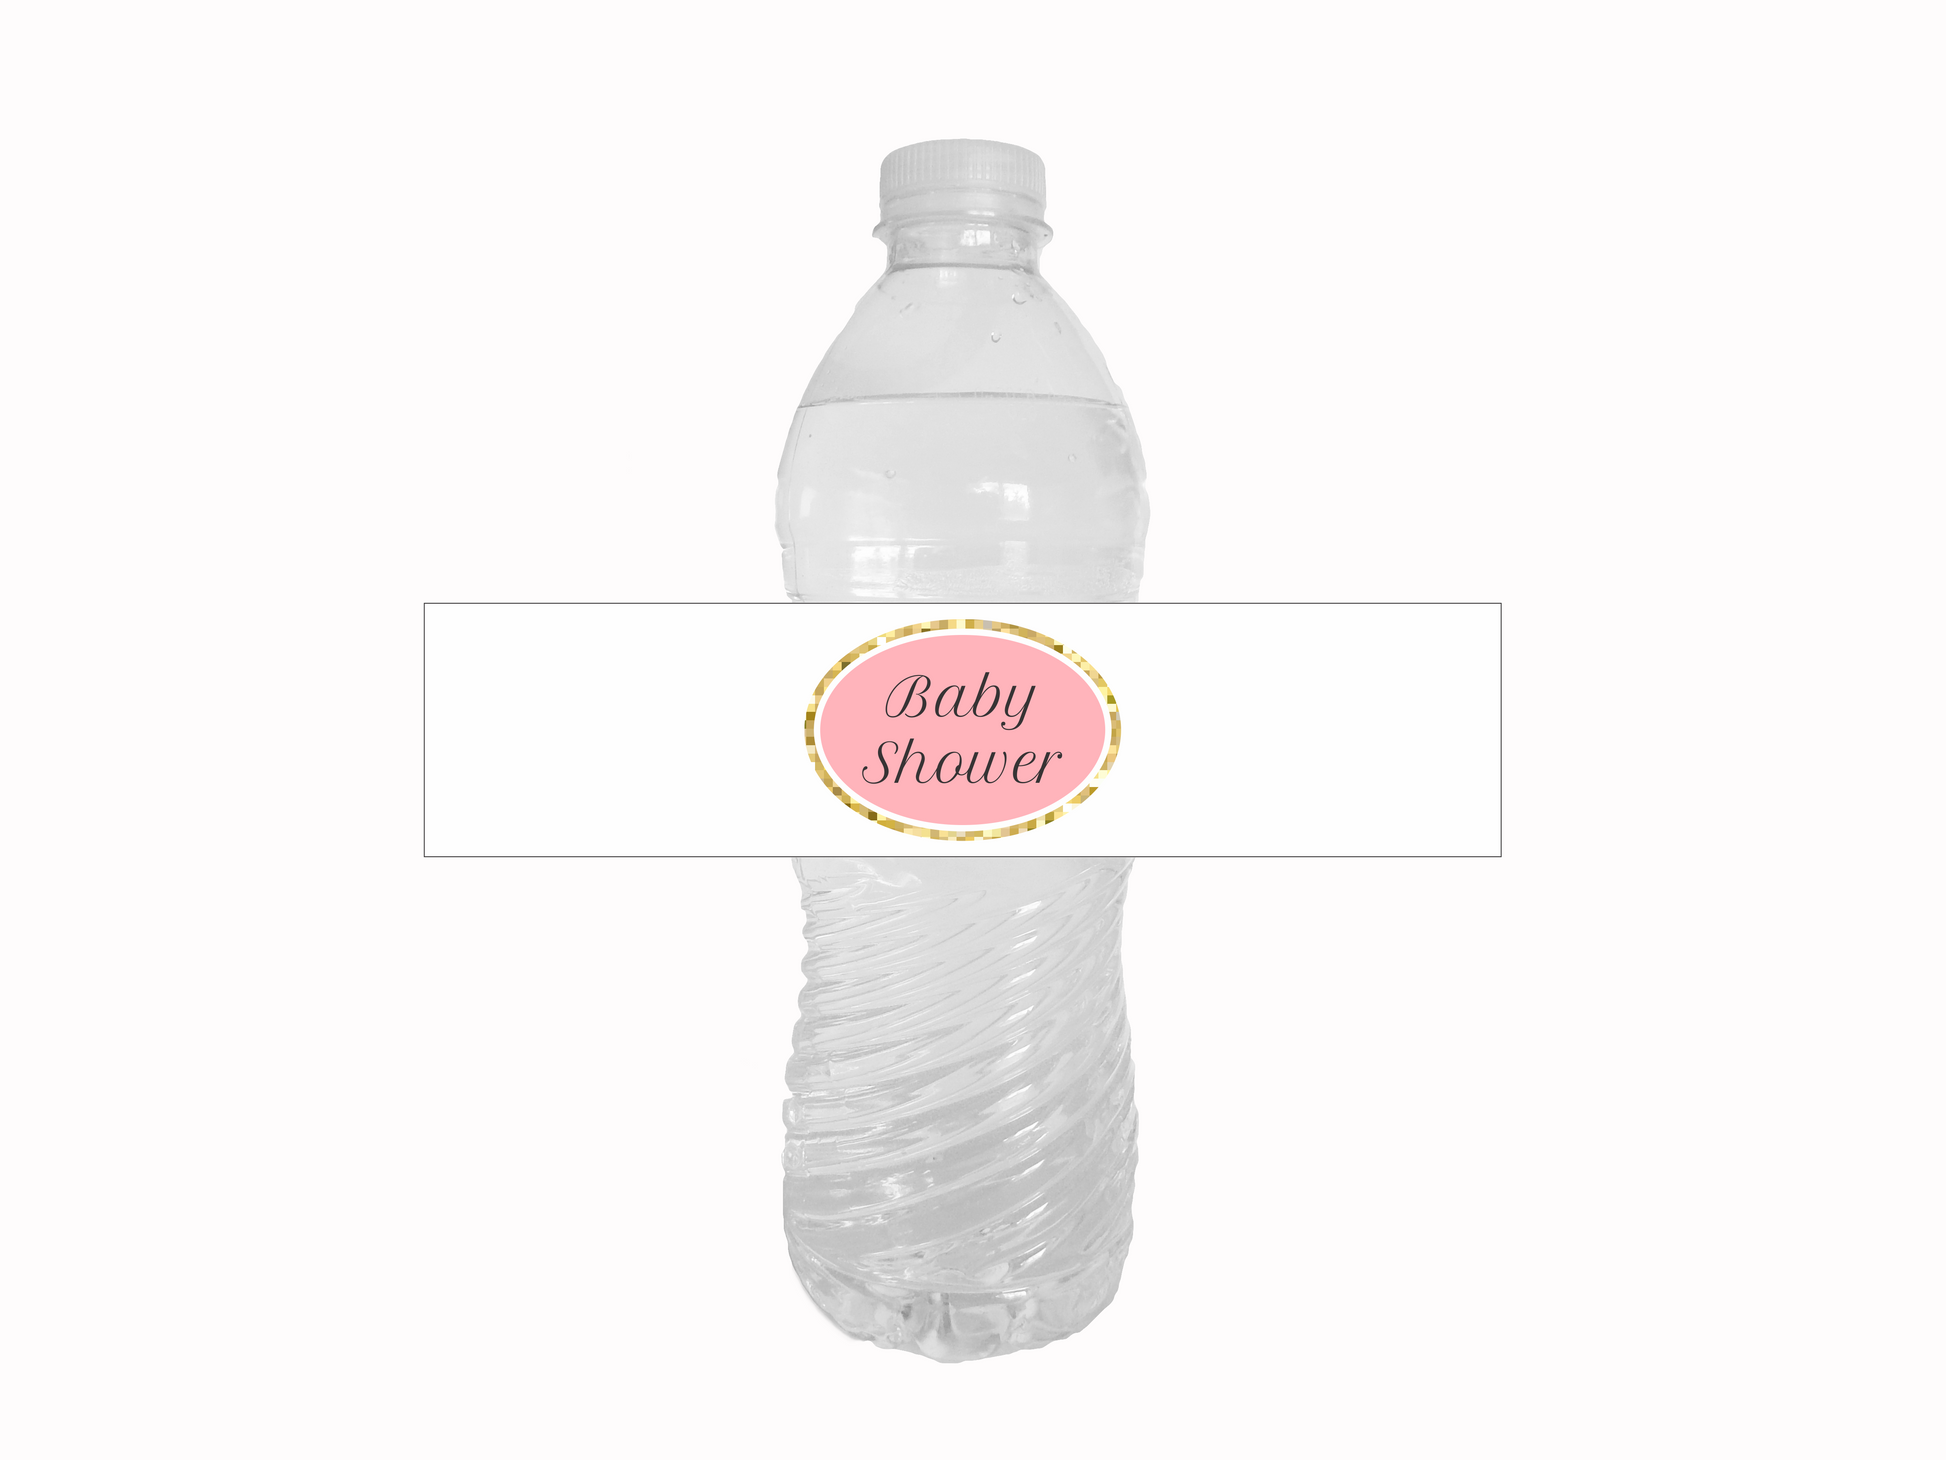 https://celebratingtogether.com/cdn/shop/products/baby-shower-water-bottle-labels-printable-labels-pink-and-gold-glitter-on-bottle-celebrating-together.png?v=1565281825&width=1946